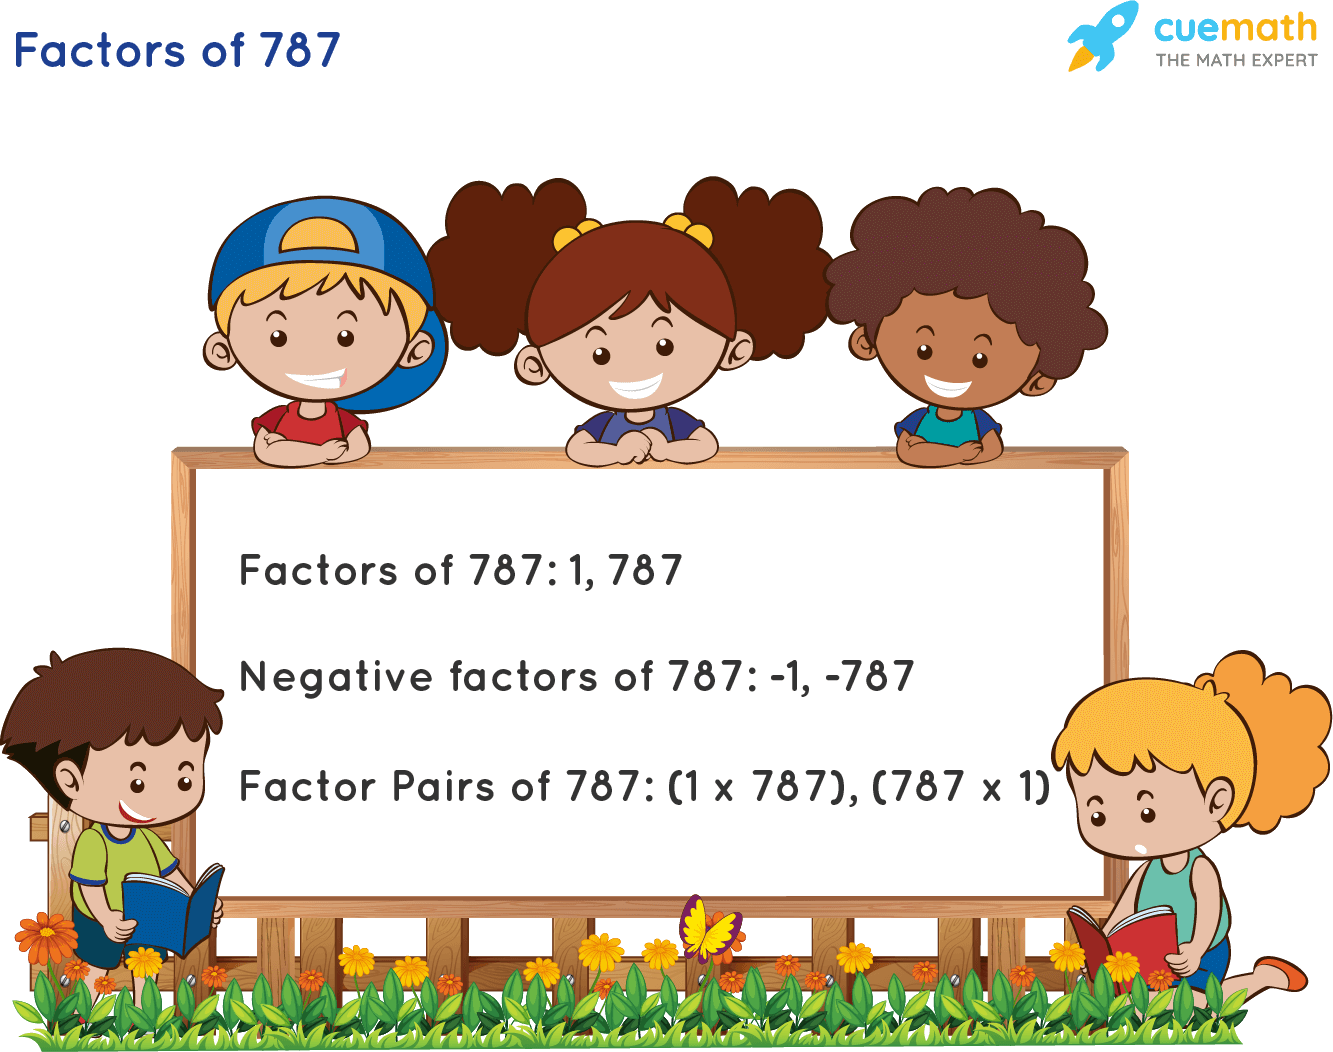 Factors of 787